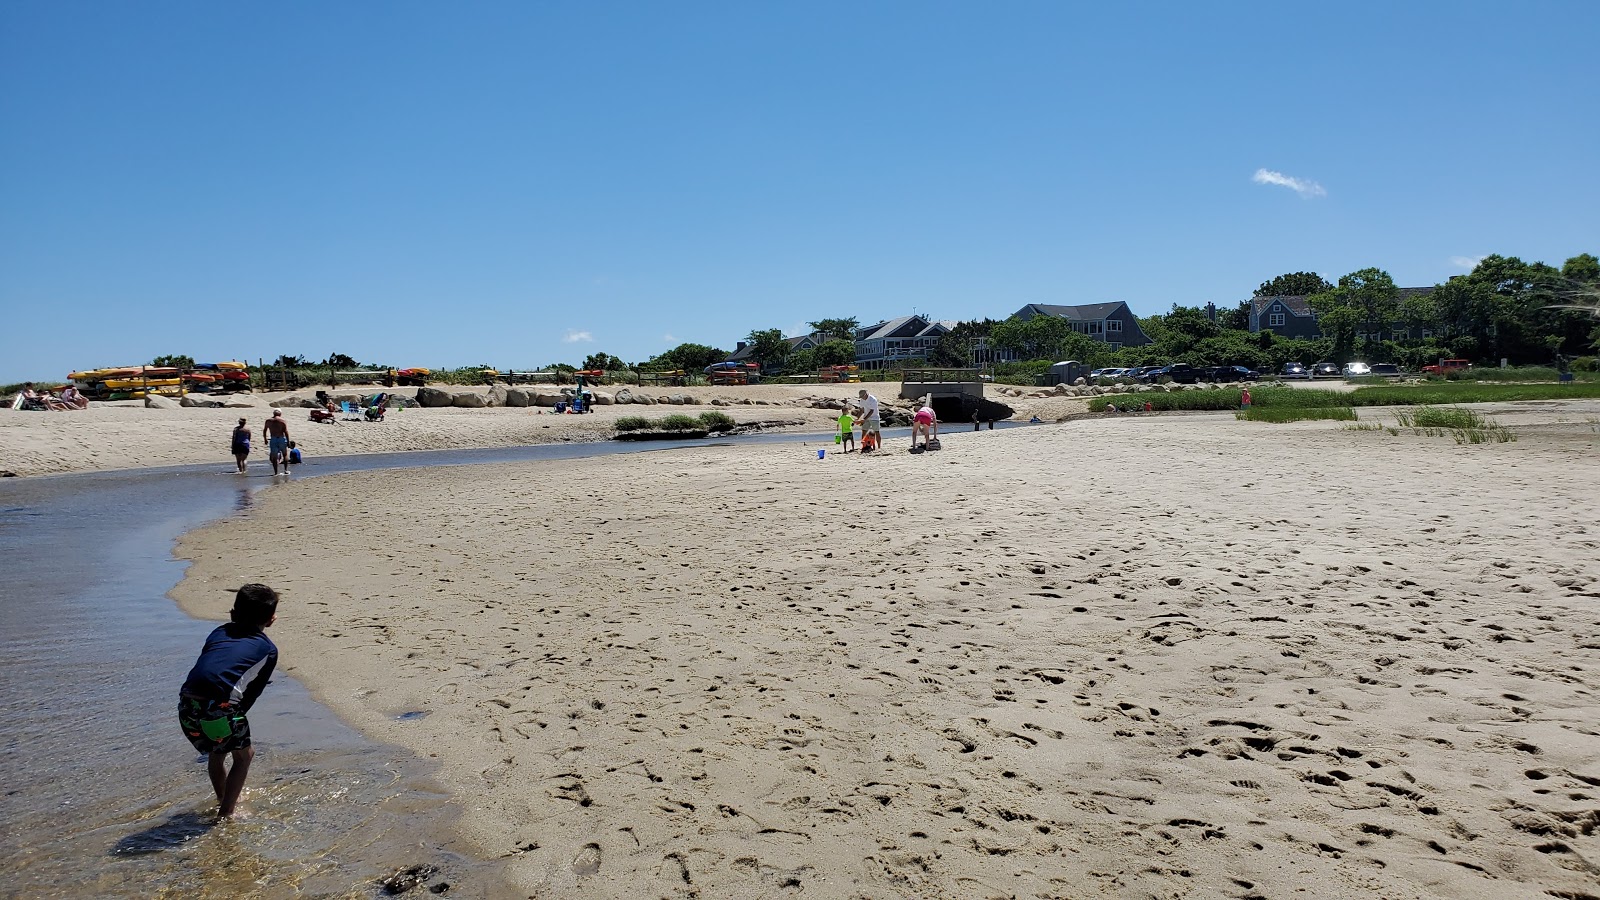 Zdjęcie Mant's Landing beach z przestronna plaża